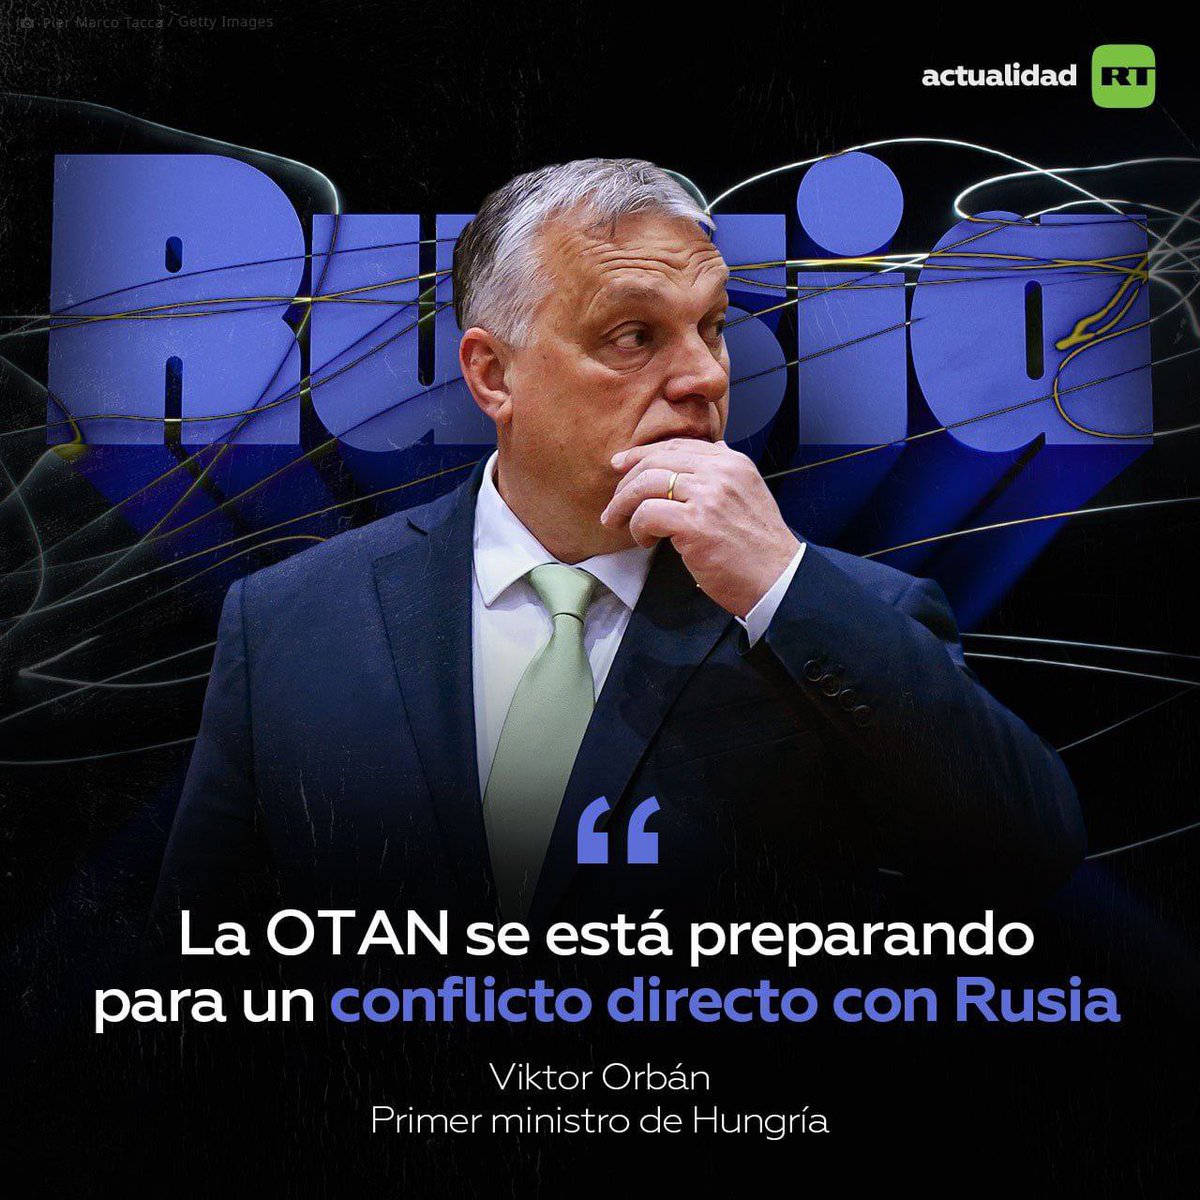 🇭🇺 El primer ministro de Hungría, Viktor Orbán, ha asegurado que la OTAN se está preparando para entrar en una confrontación bélica directa con Rusia, poniendo como excusa una supuesta 'amenaza rusa' para el Occidente colectivo. El mandatario dijo que lo que se ve en la